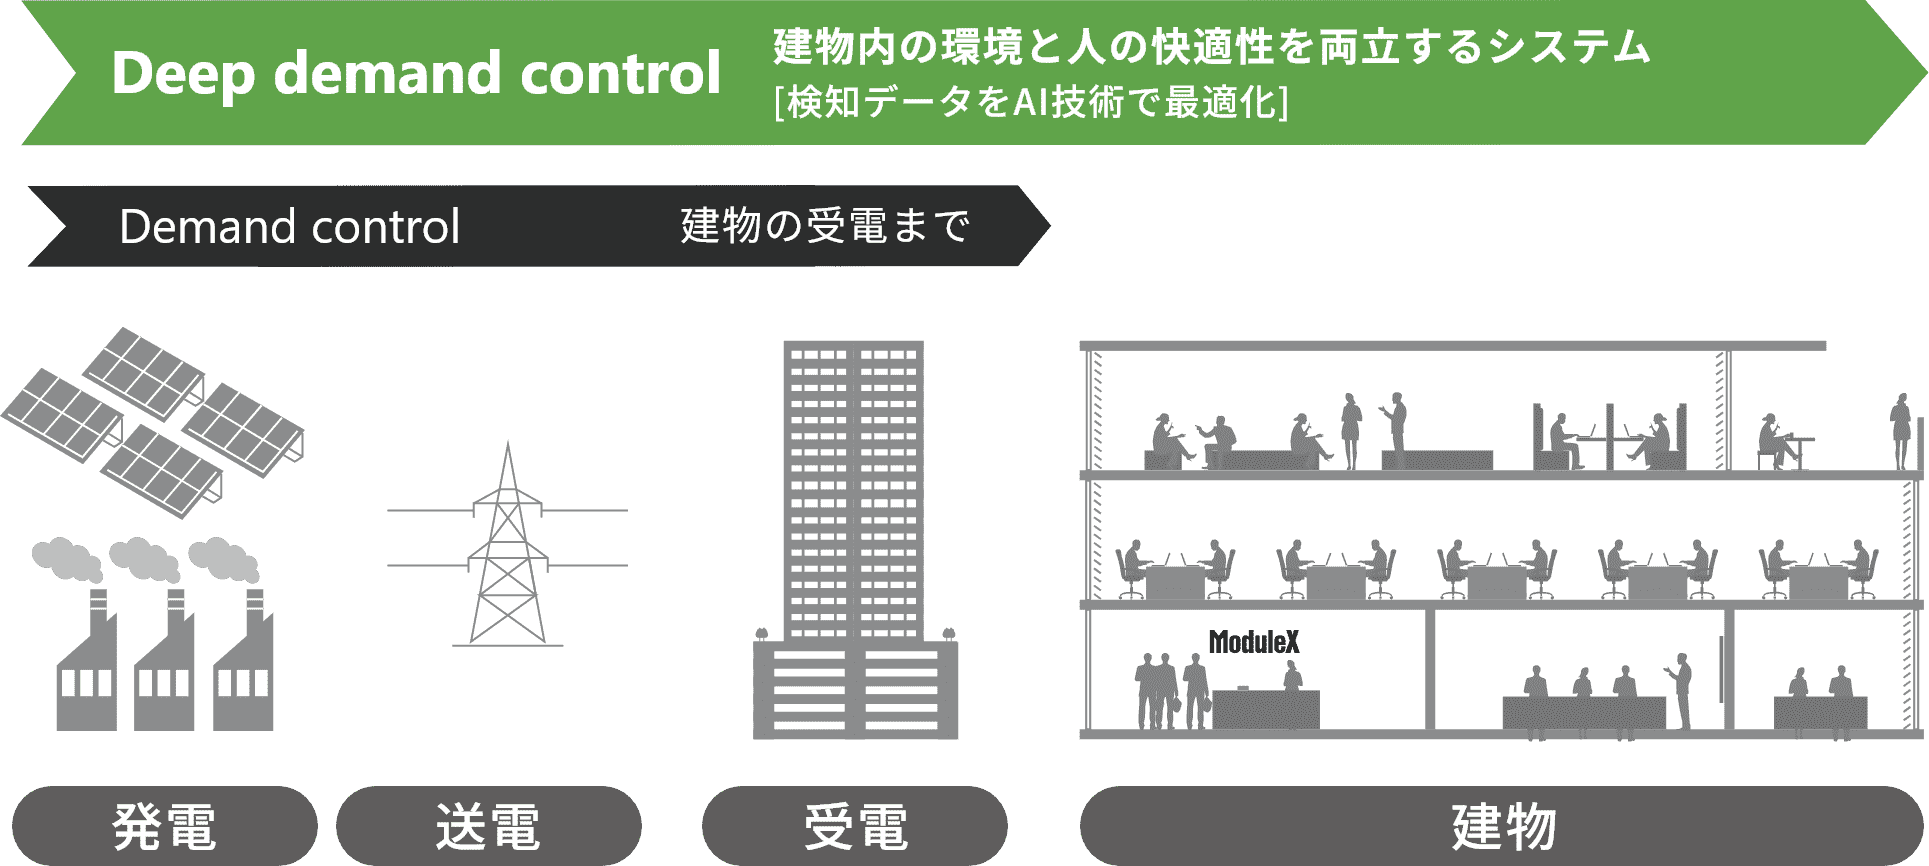 Deep demand control:建物内の環境と人の快適性を両立するシステム[検知データをAI技術で最適化]